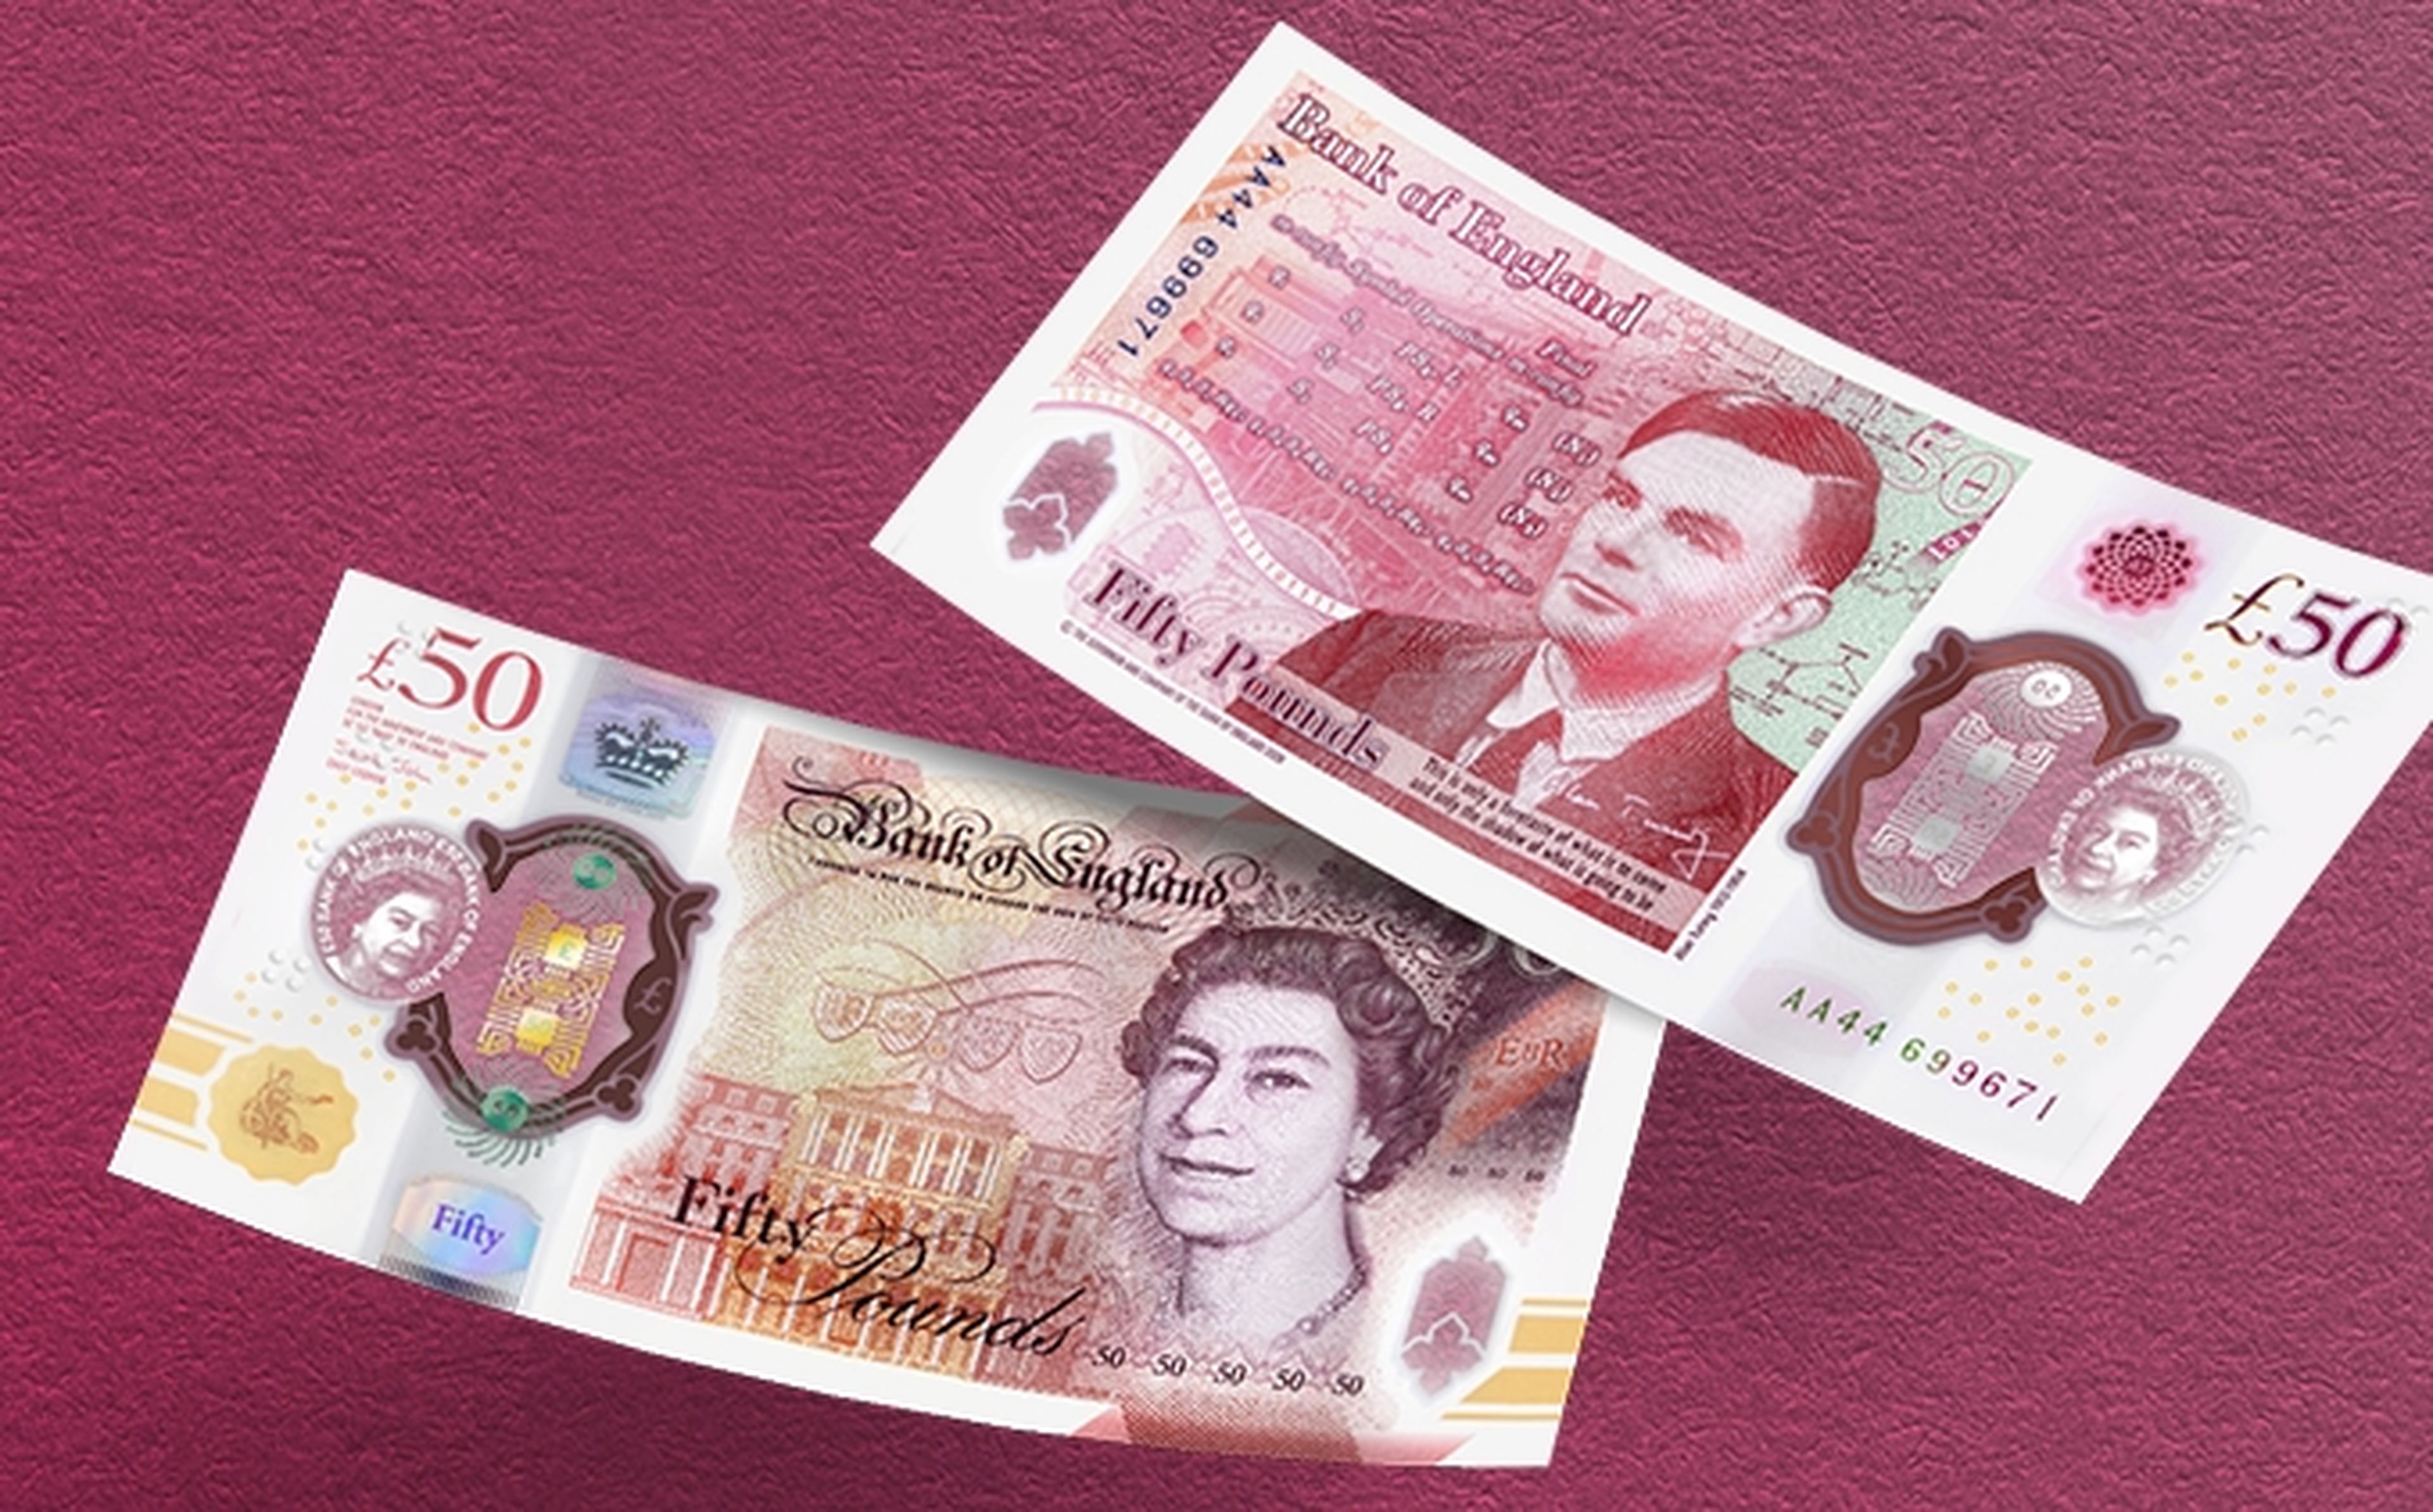 Inglaterra salda una deuda poniendo a Alan Turing en el nuevo billete de 50 libras